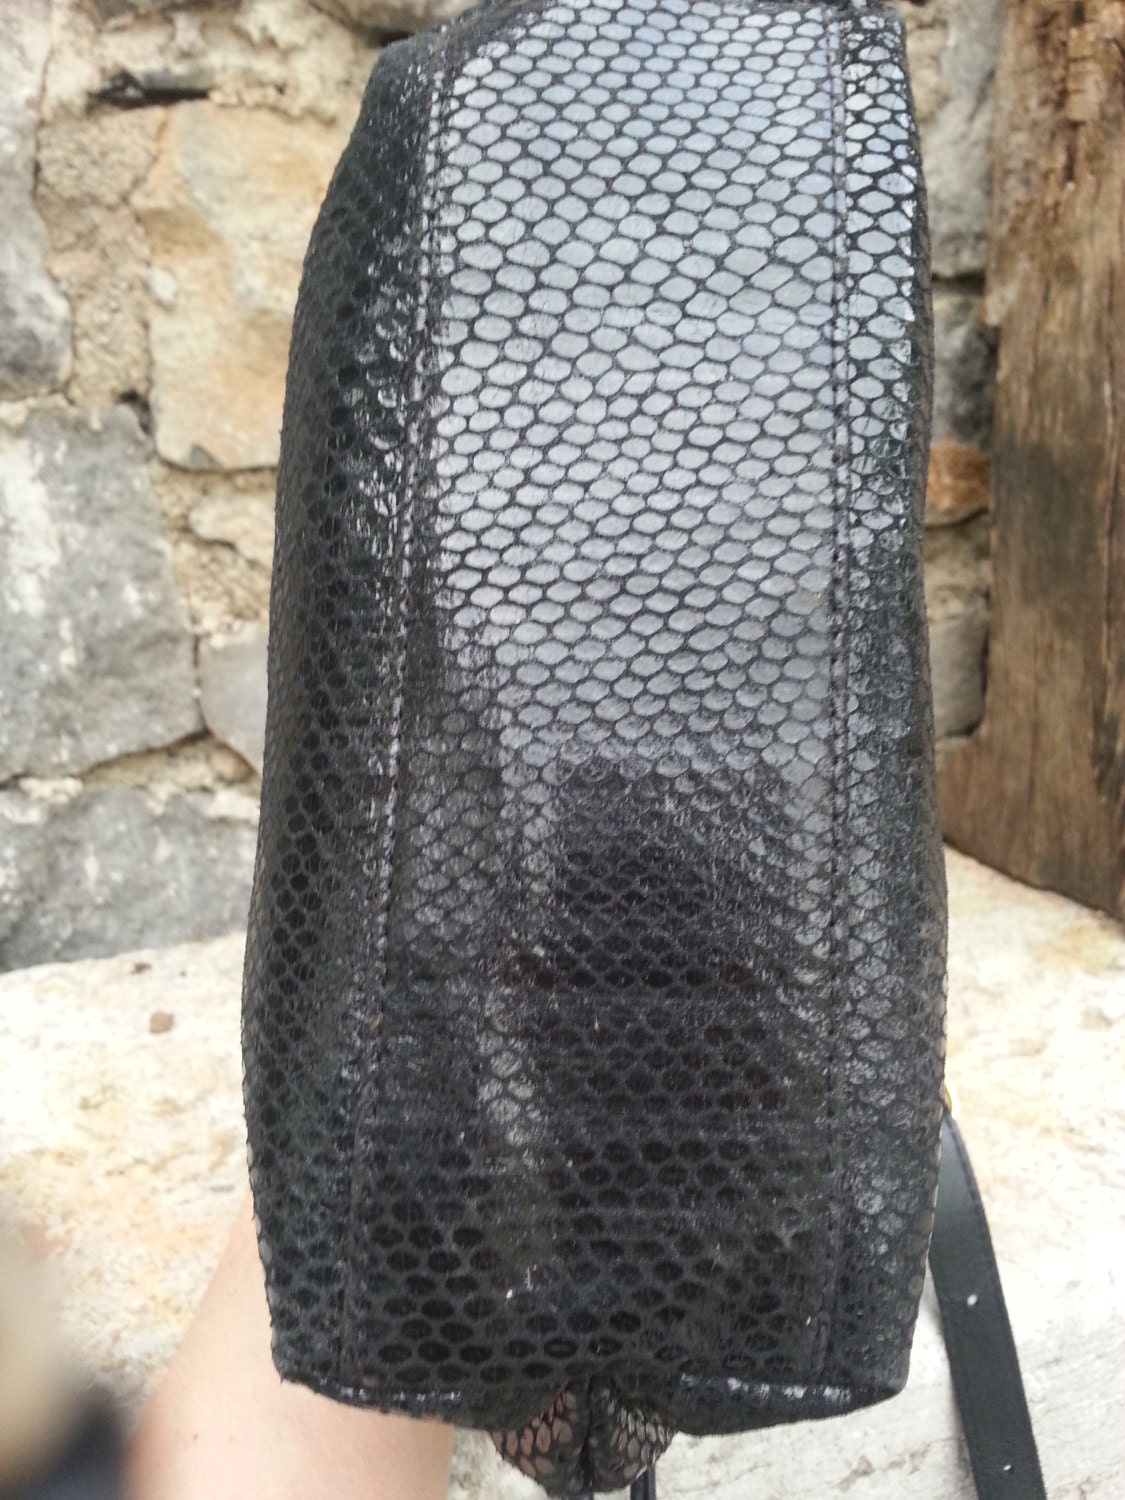 Picard Sholder Black Leather Bag 80.original Made in Germany 